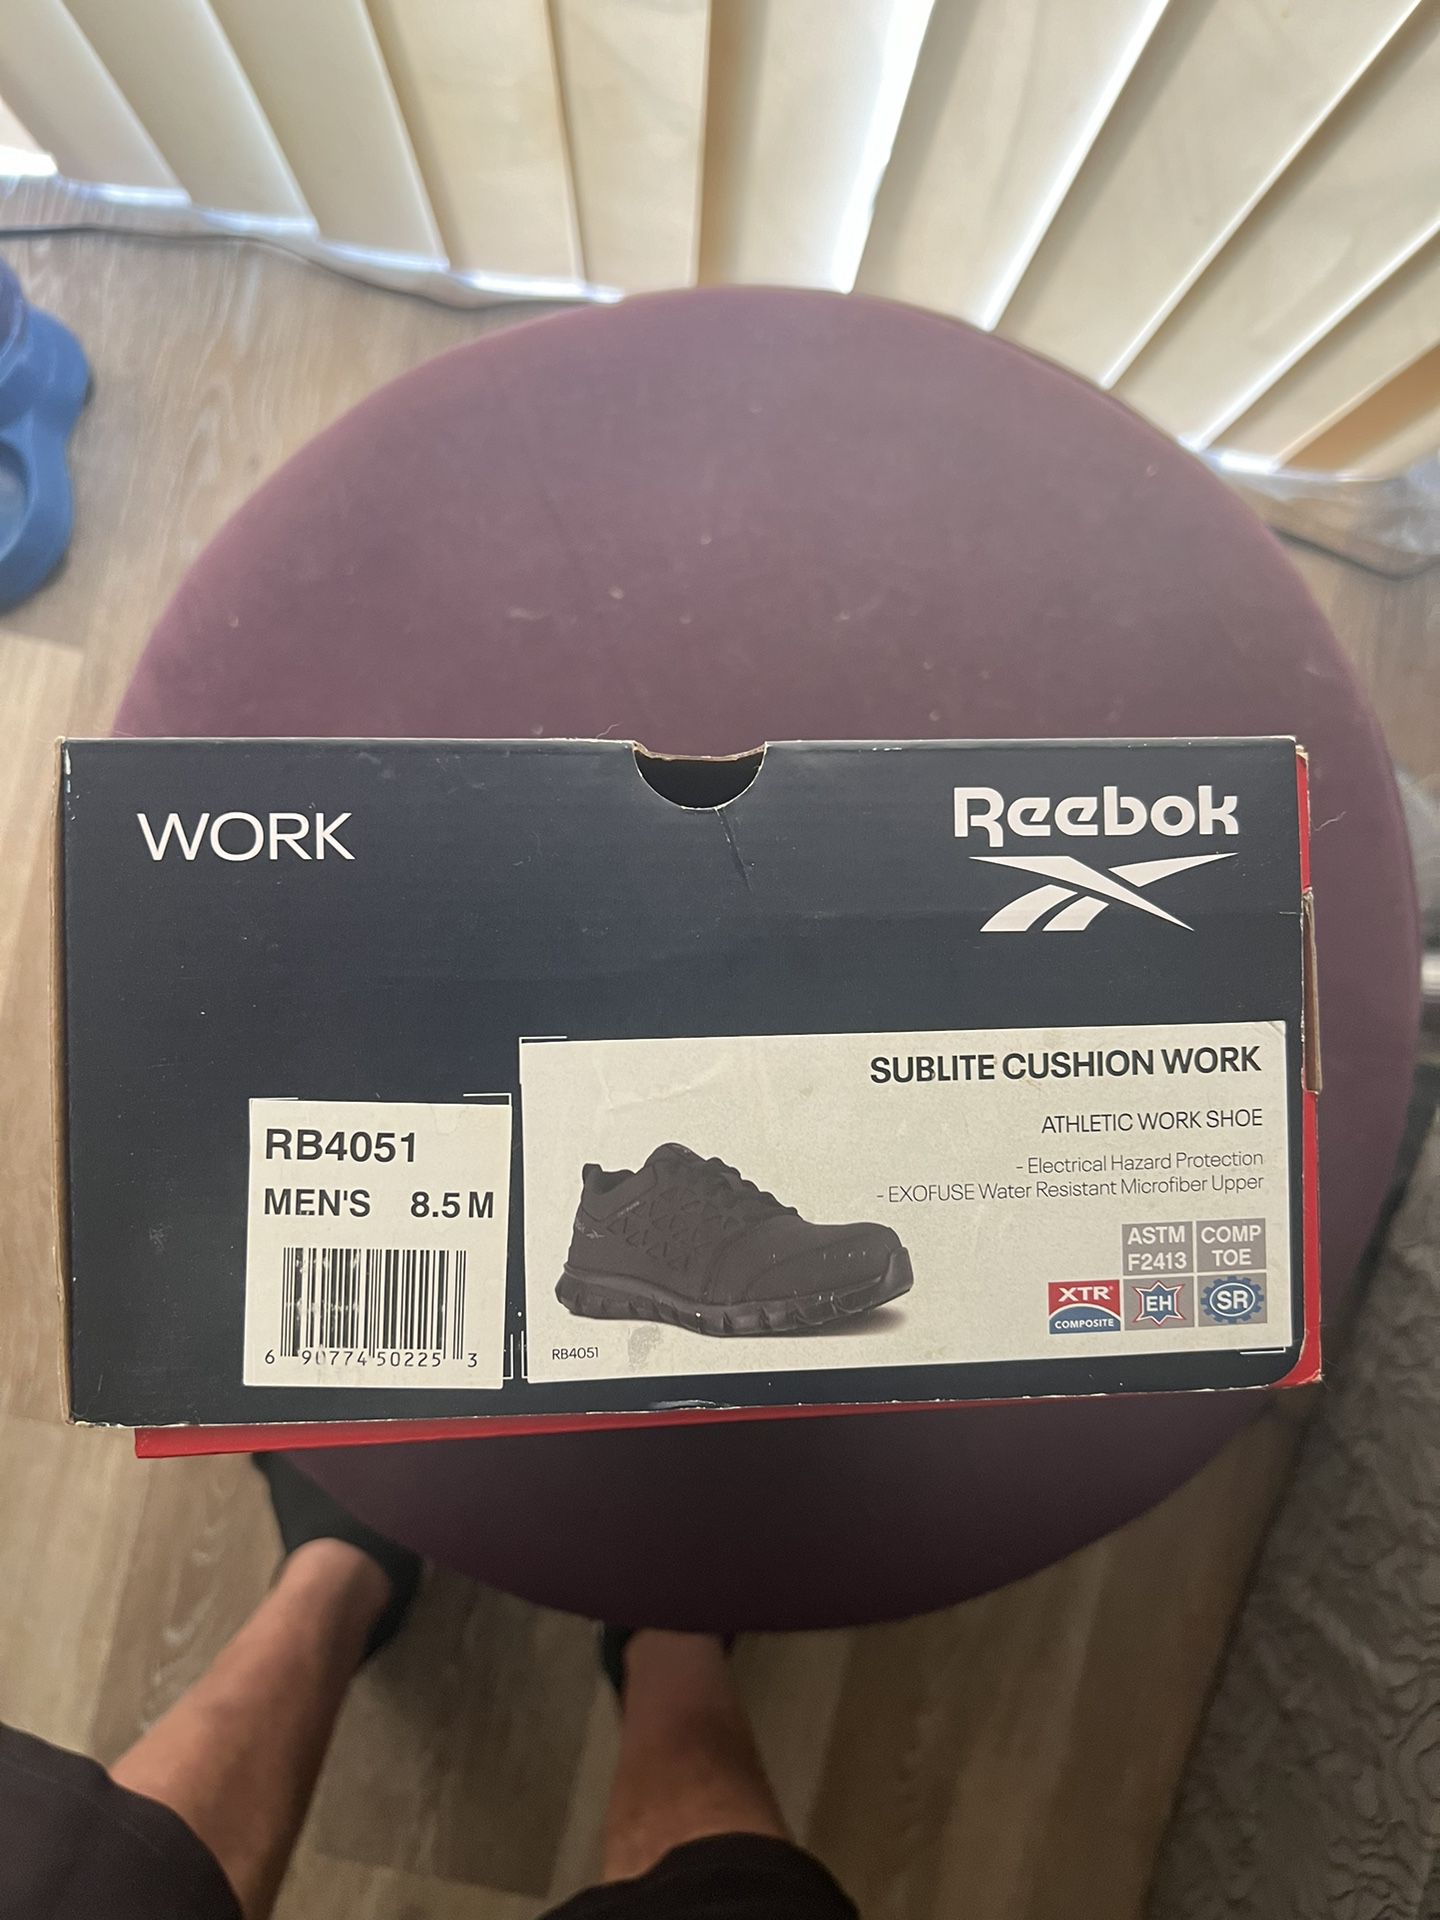 Slightly Used Like New Reebok Steel Toe Shoes